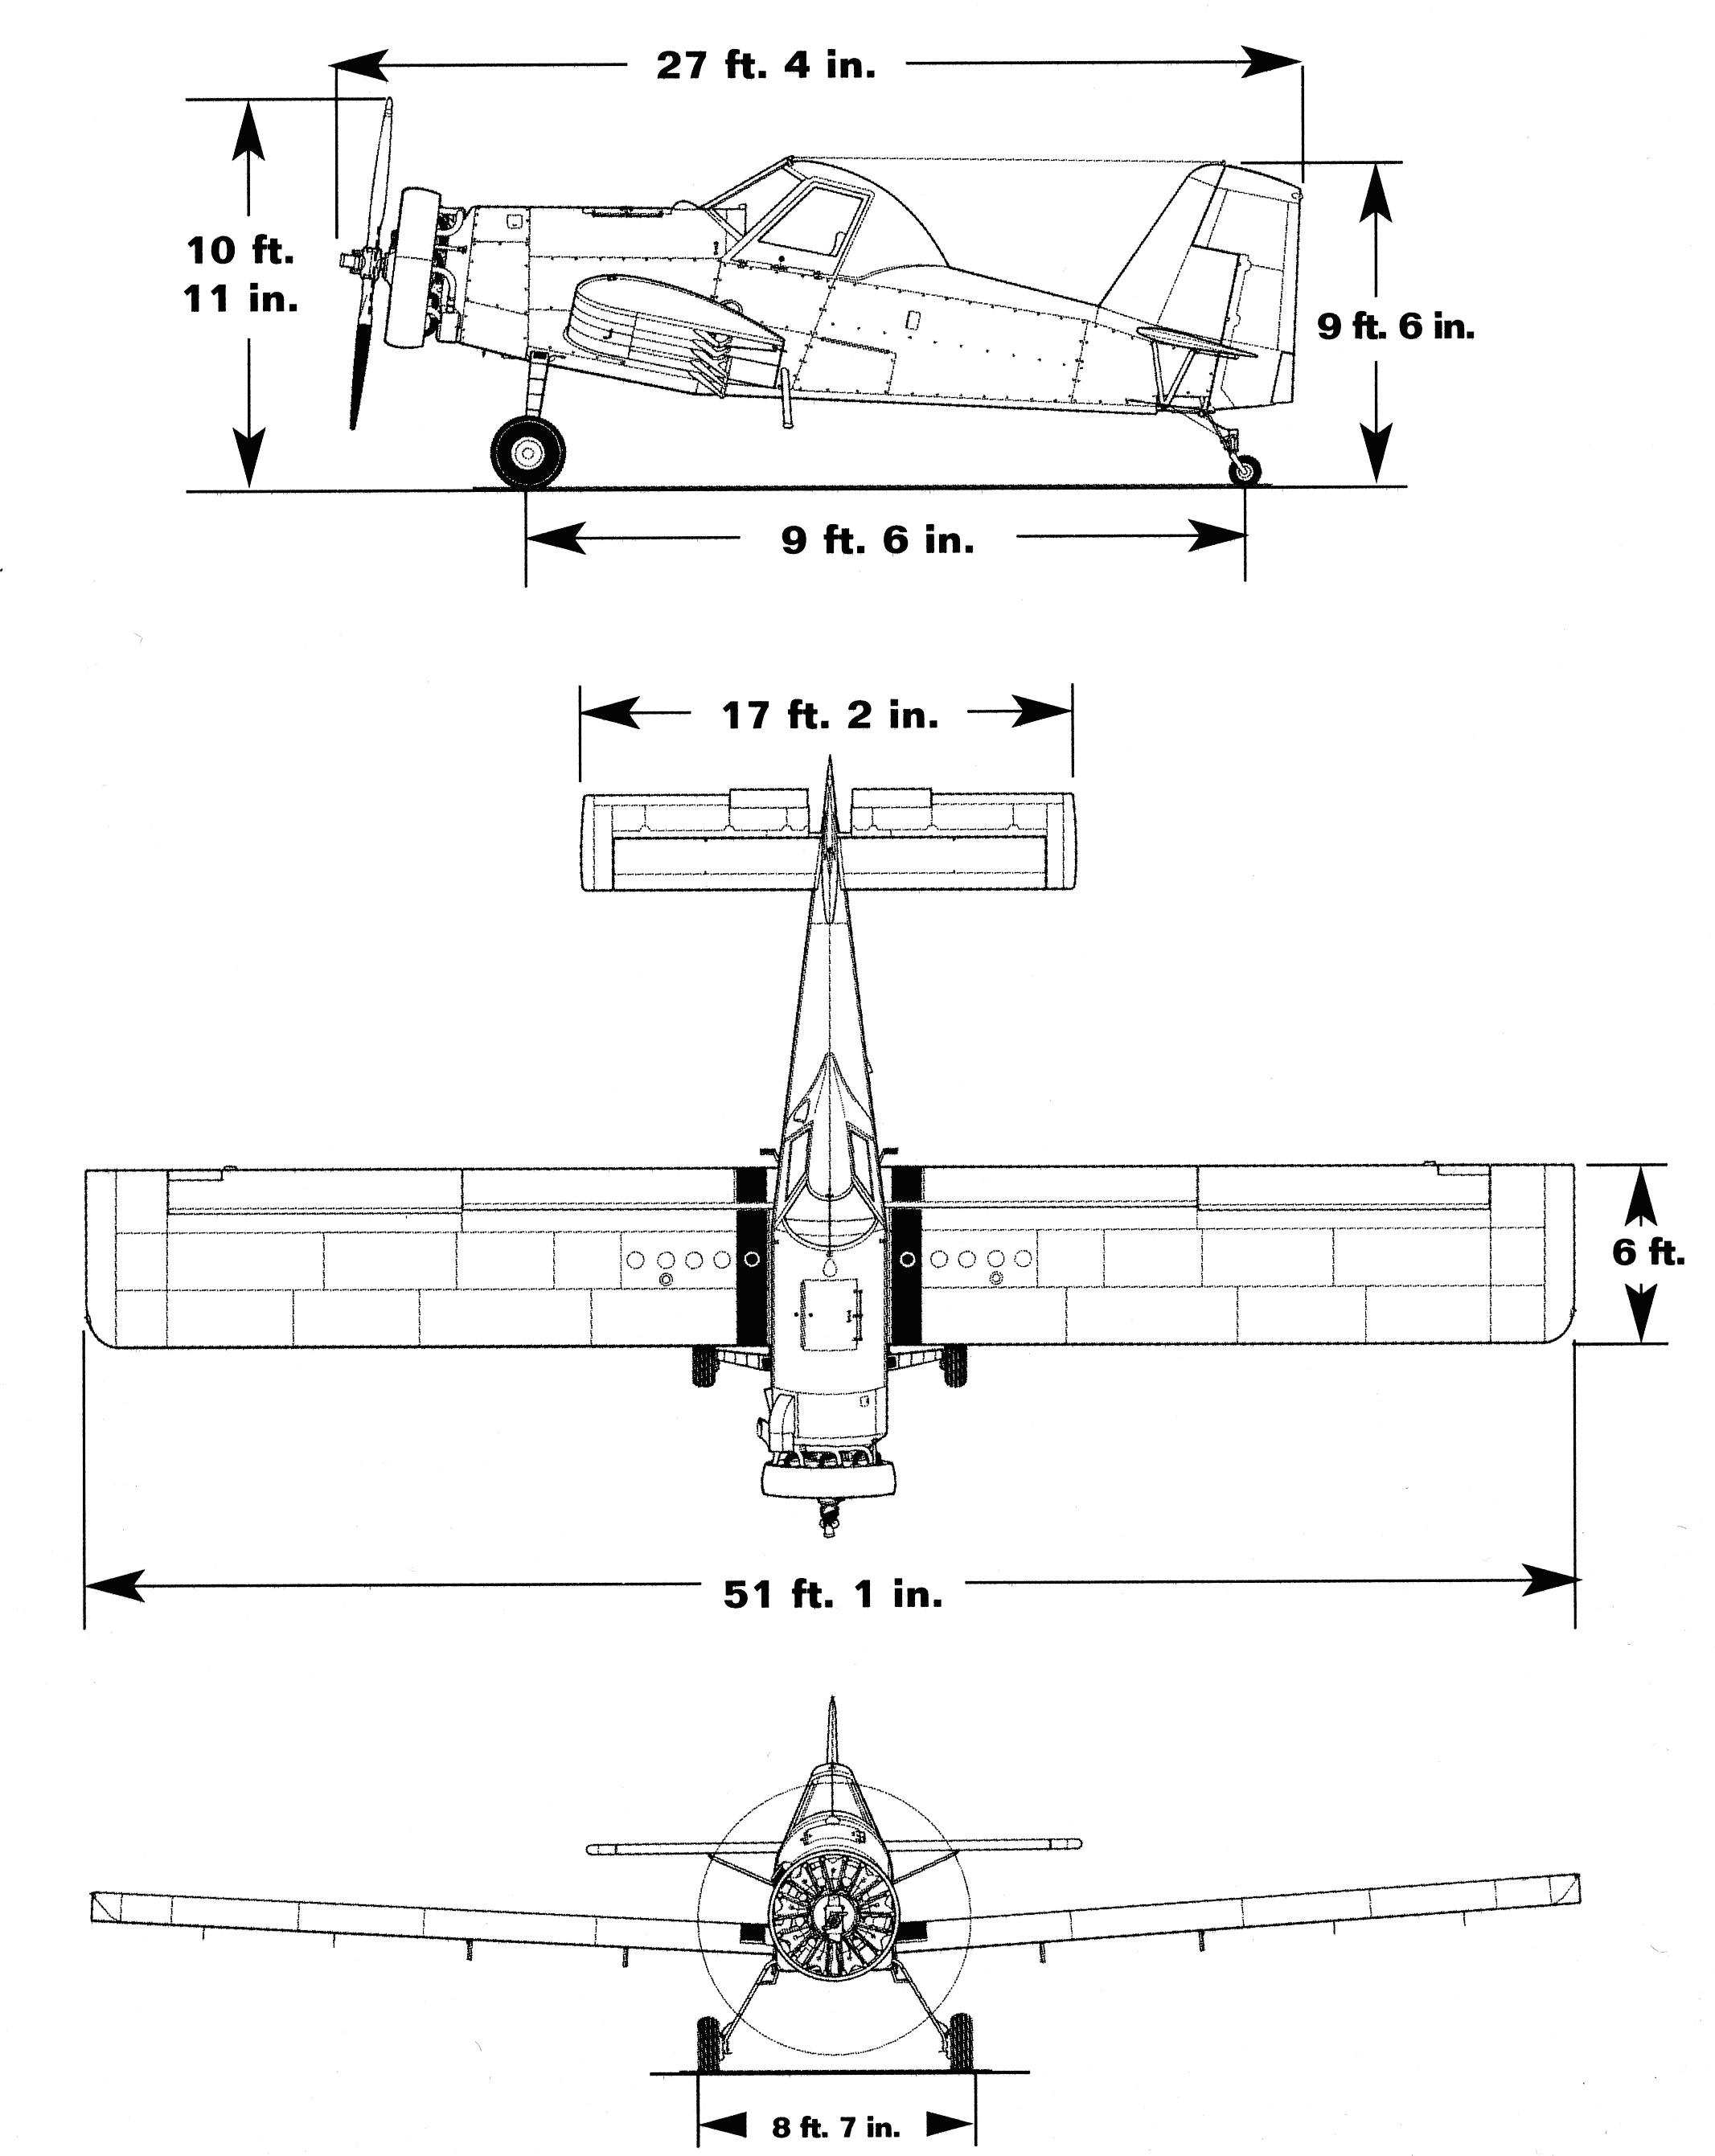 AT - 401B blueprint